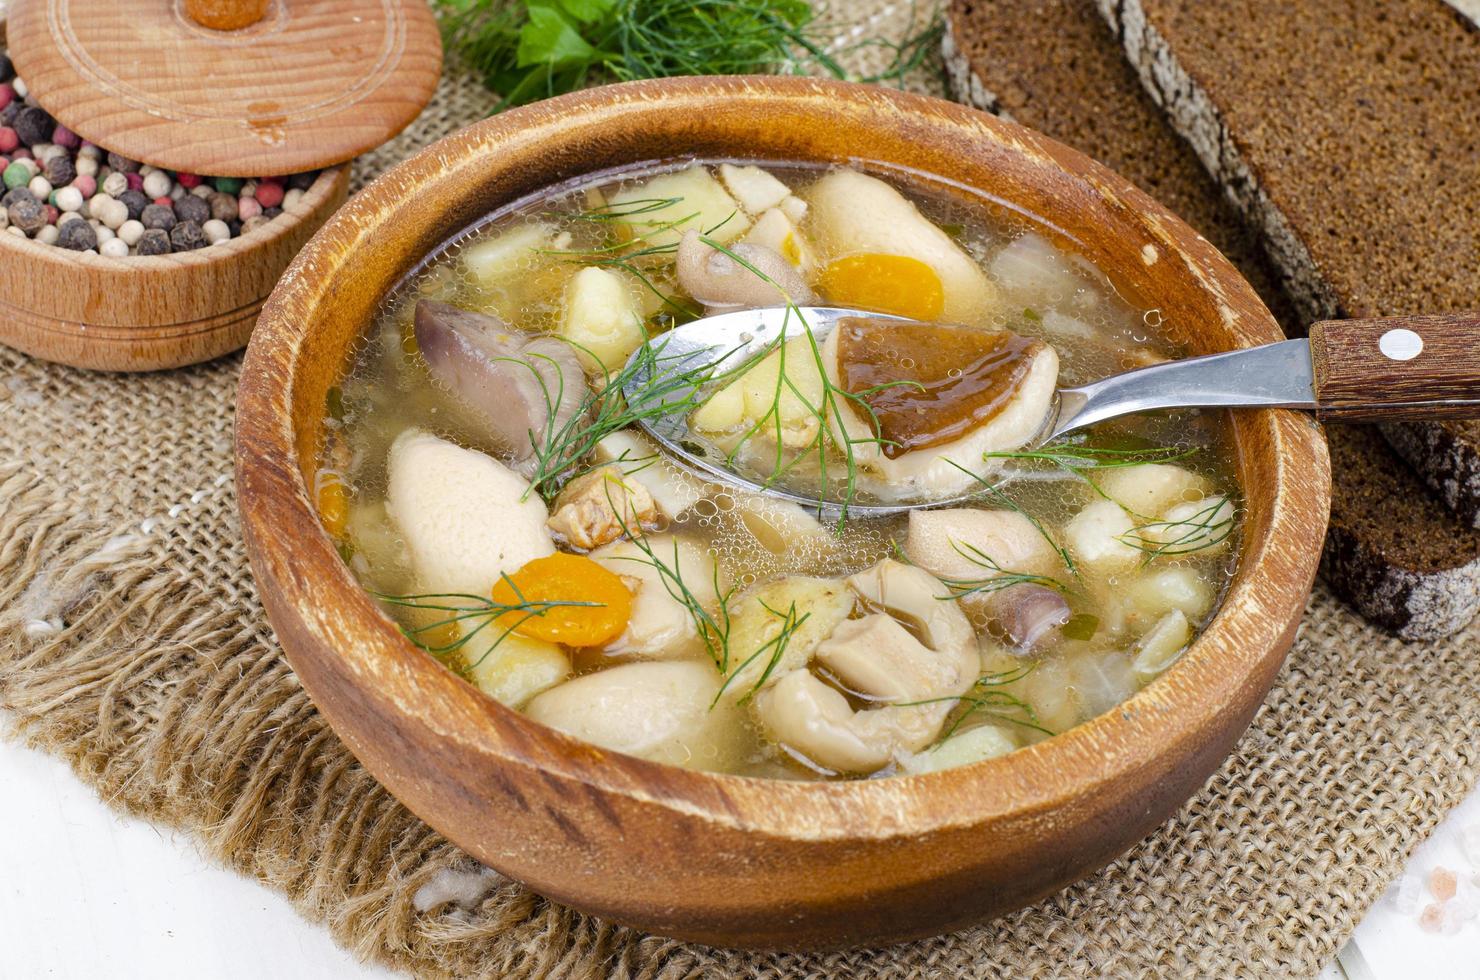 deliciosa sopa casera con setas. foto de estudio.